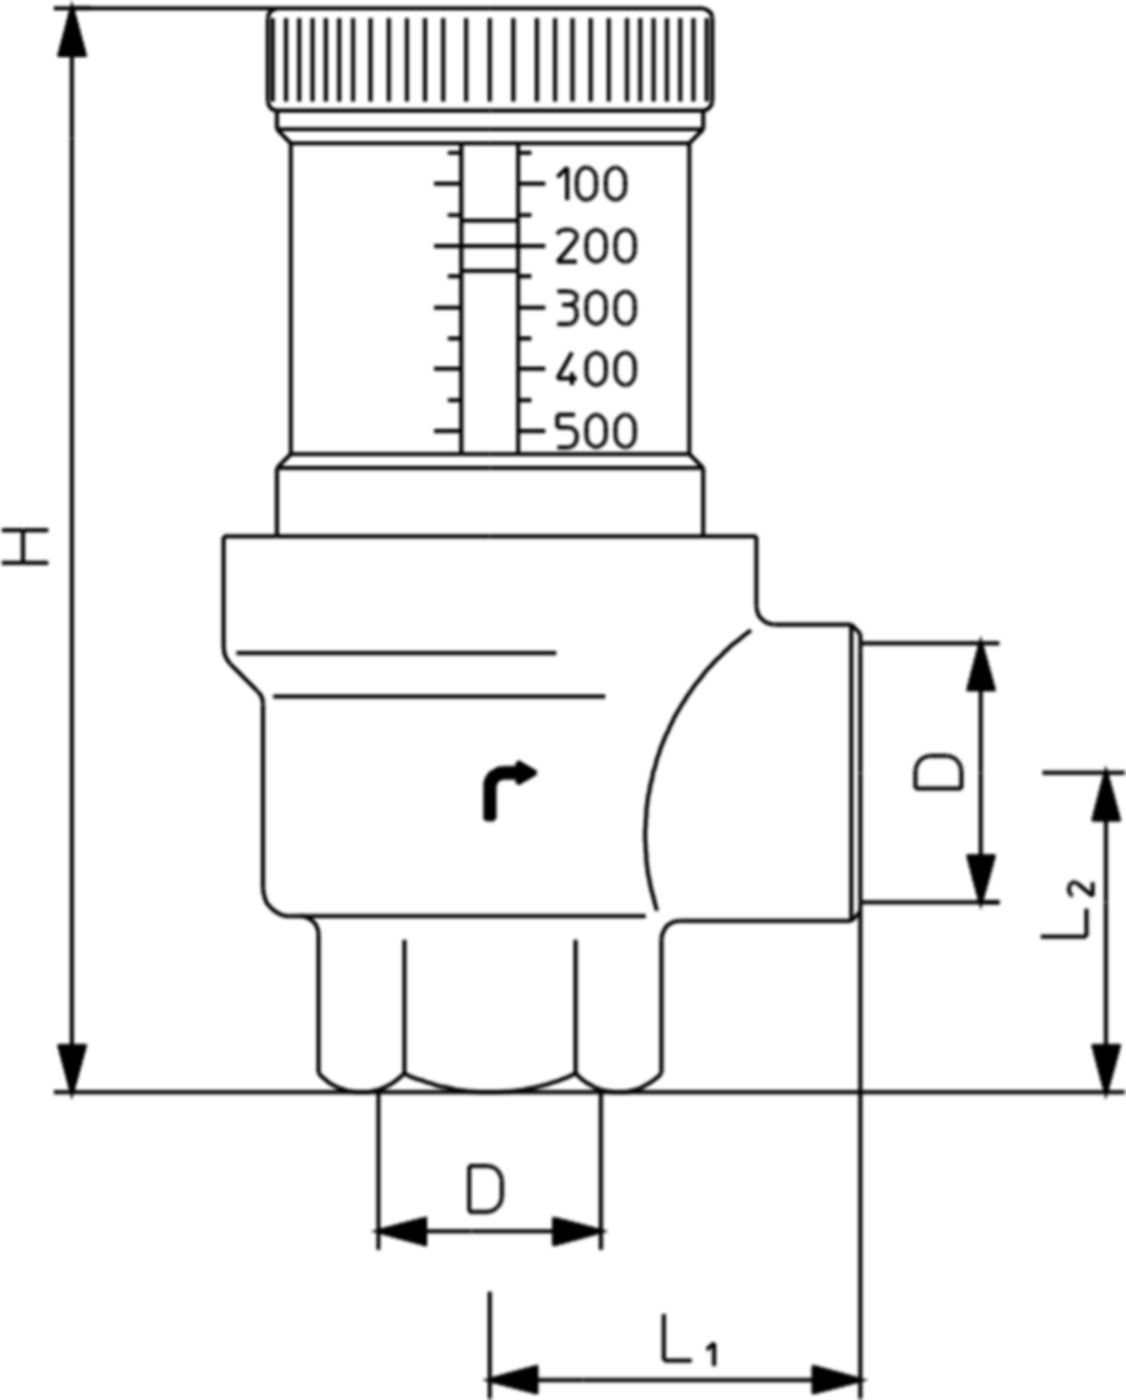 Differenzdruck-Überströmventil m/Anzeige max. 120°C PN 10 11/4" 108 52 10 - Oventrop Programm